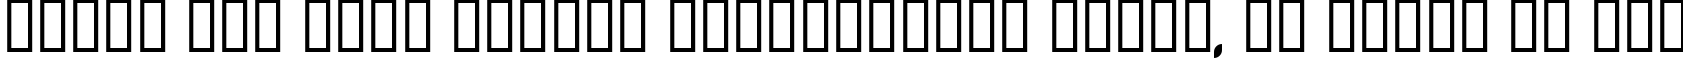 Пример написания шрифтом AlphaMaleModern текста на русском